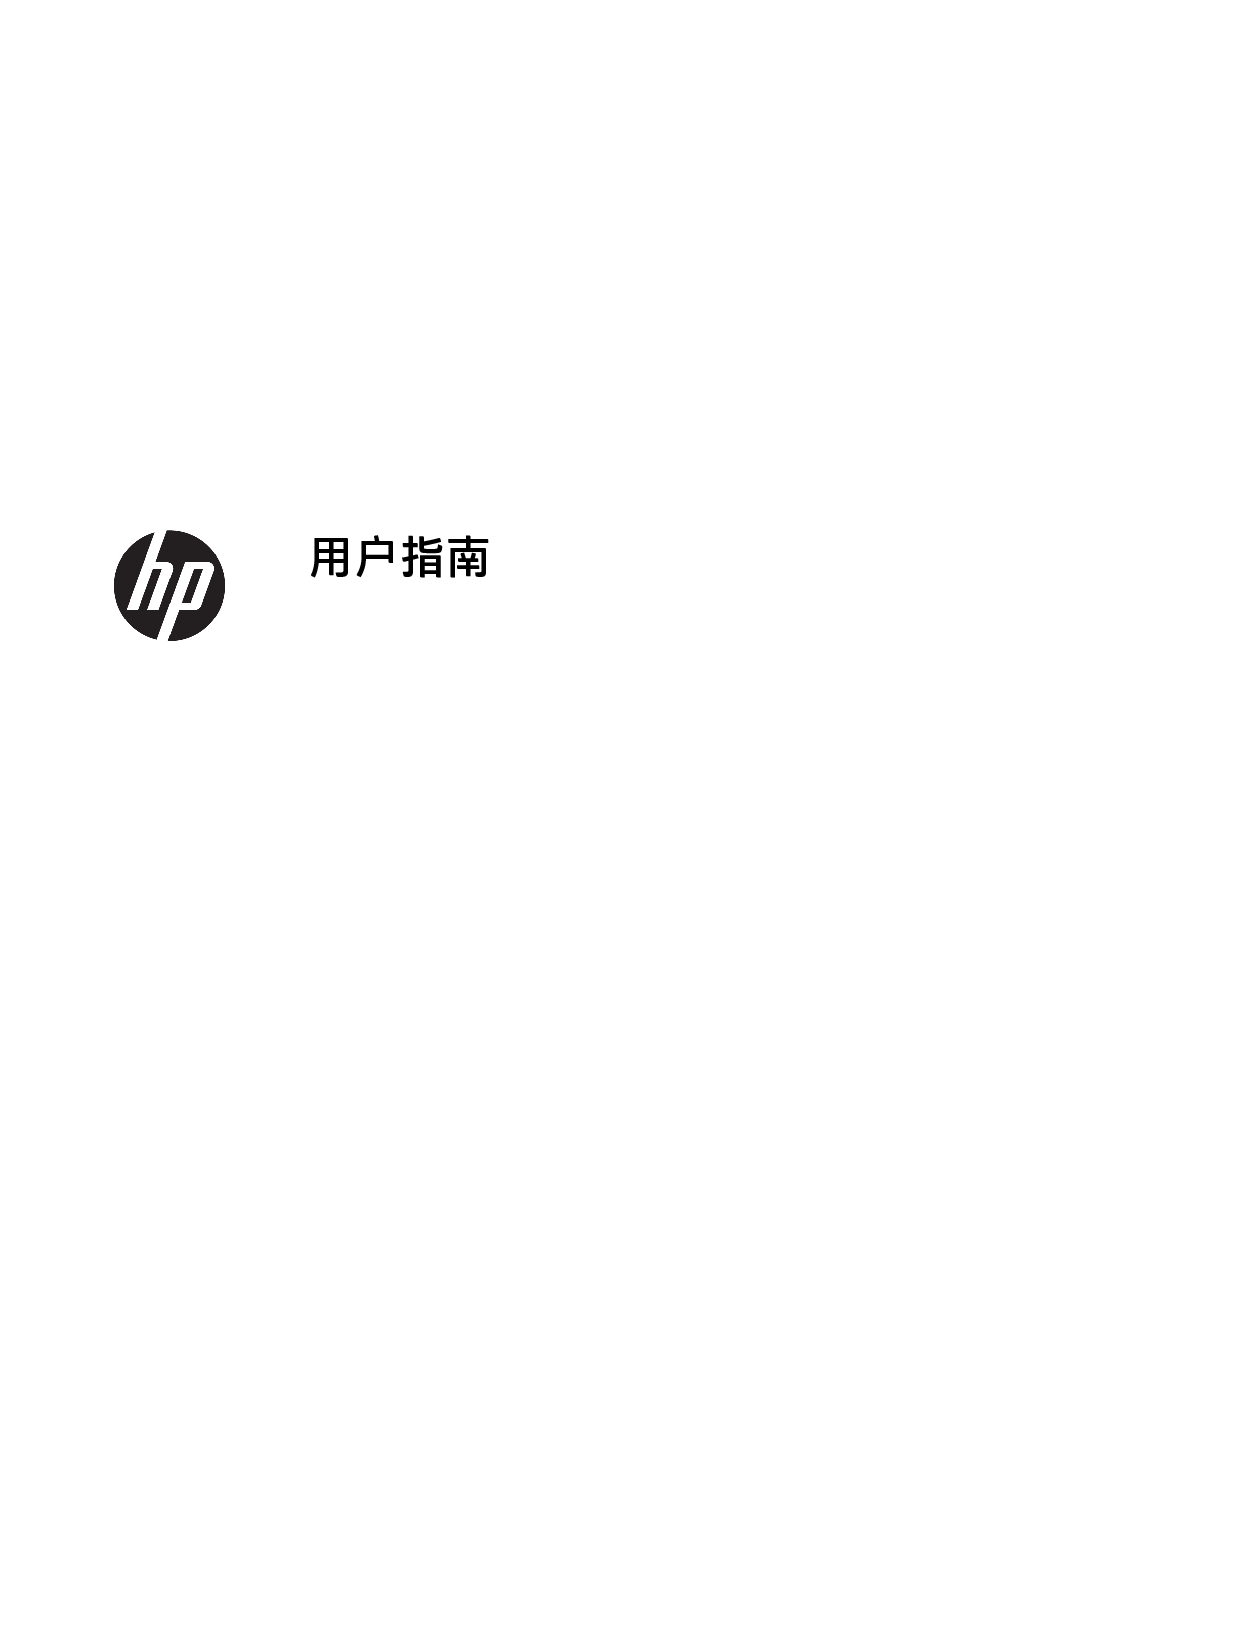 惠普 HP ENVY 13-ad000 用户指南 封面